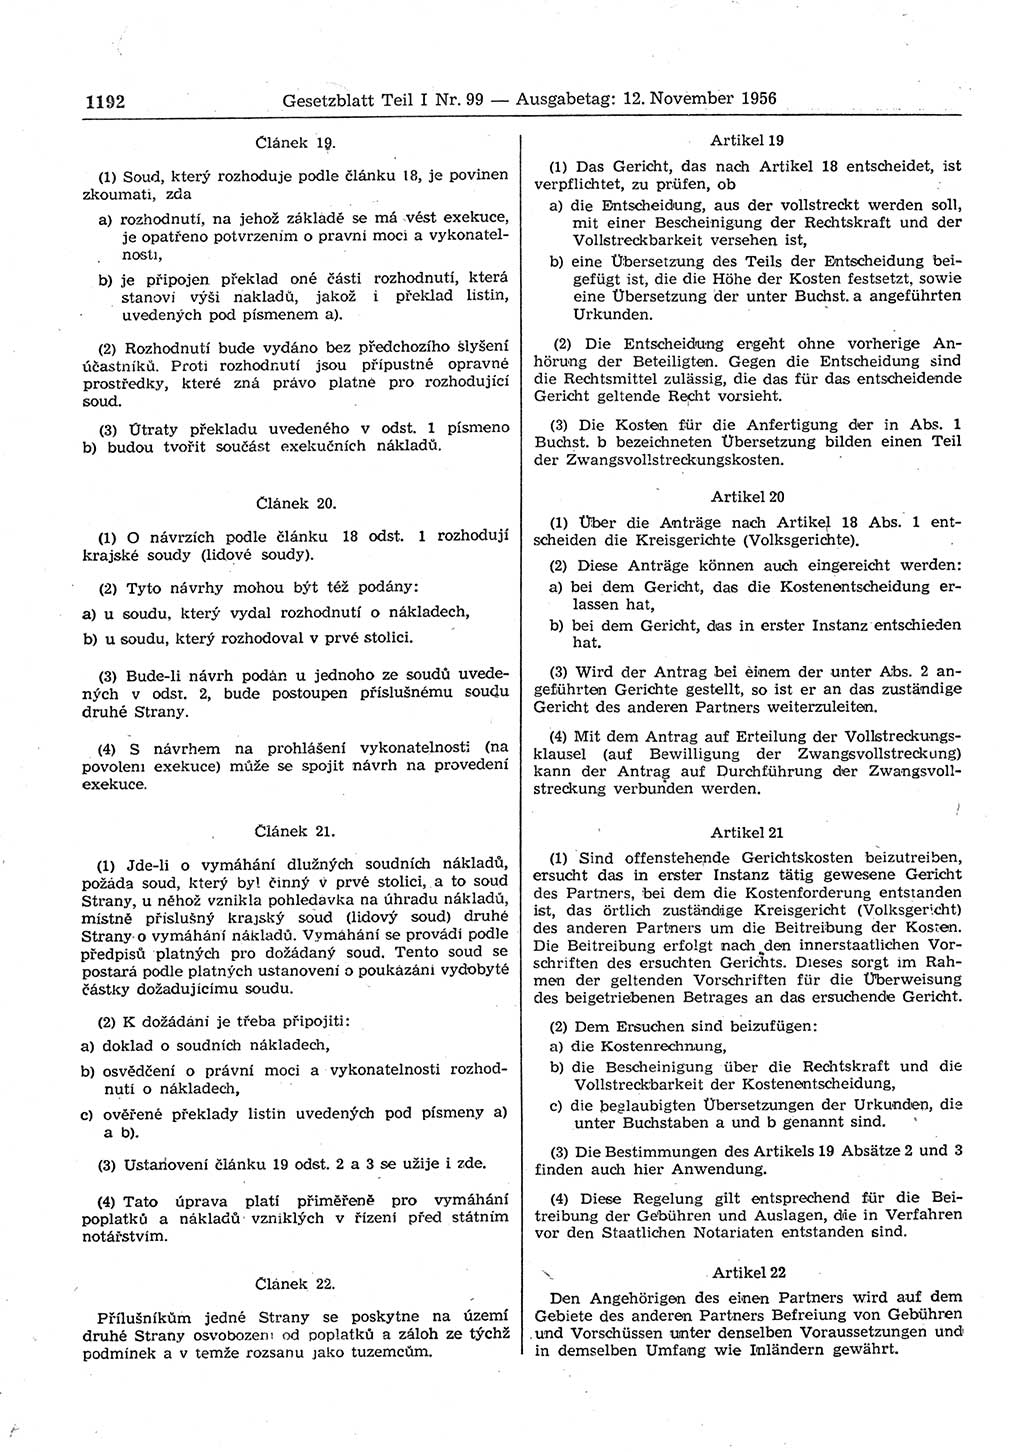 Gesetzblatt (GBl.) der Deutschen Demokratischen Republik (DDR) Teil Ⅰ 1956, Seite 1192 (GBl. DDR Ⅰ 1956, S. 1192)